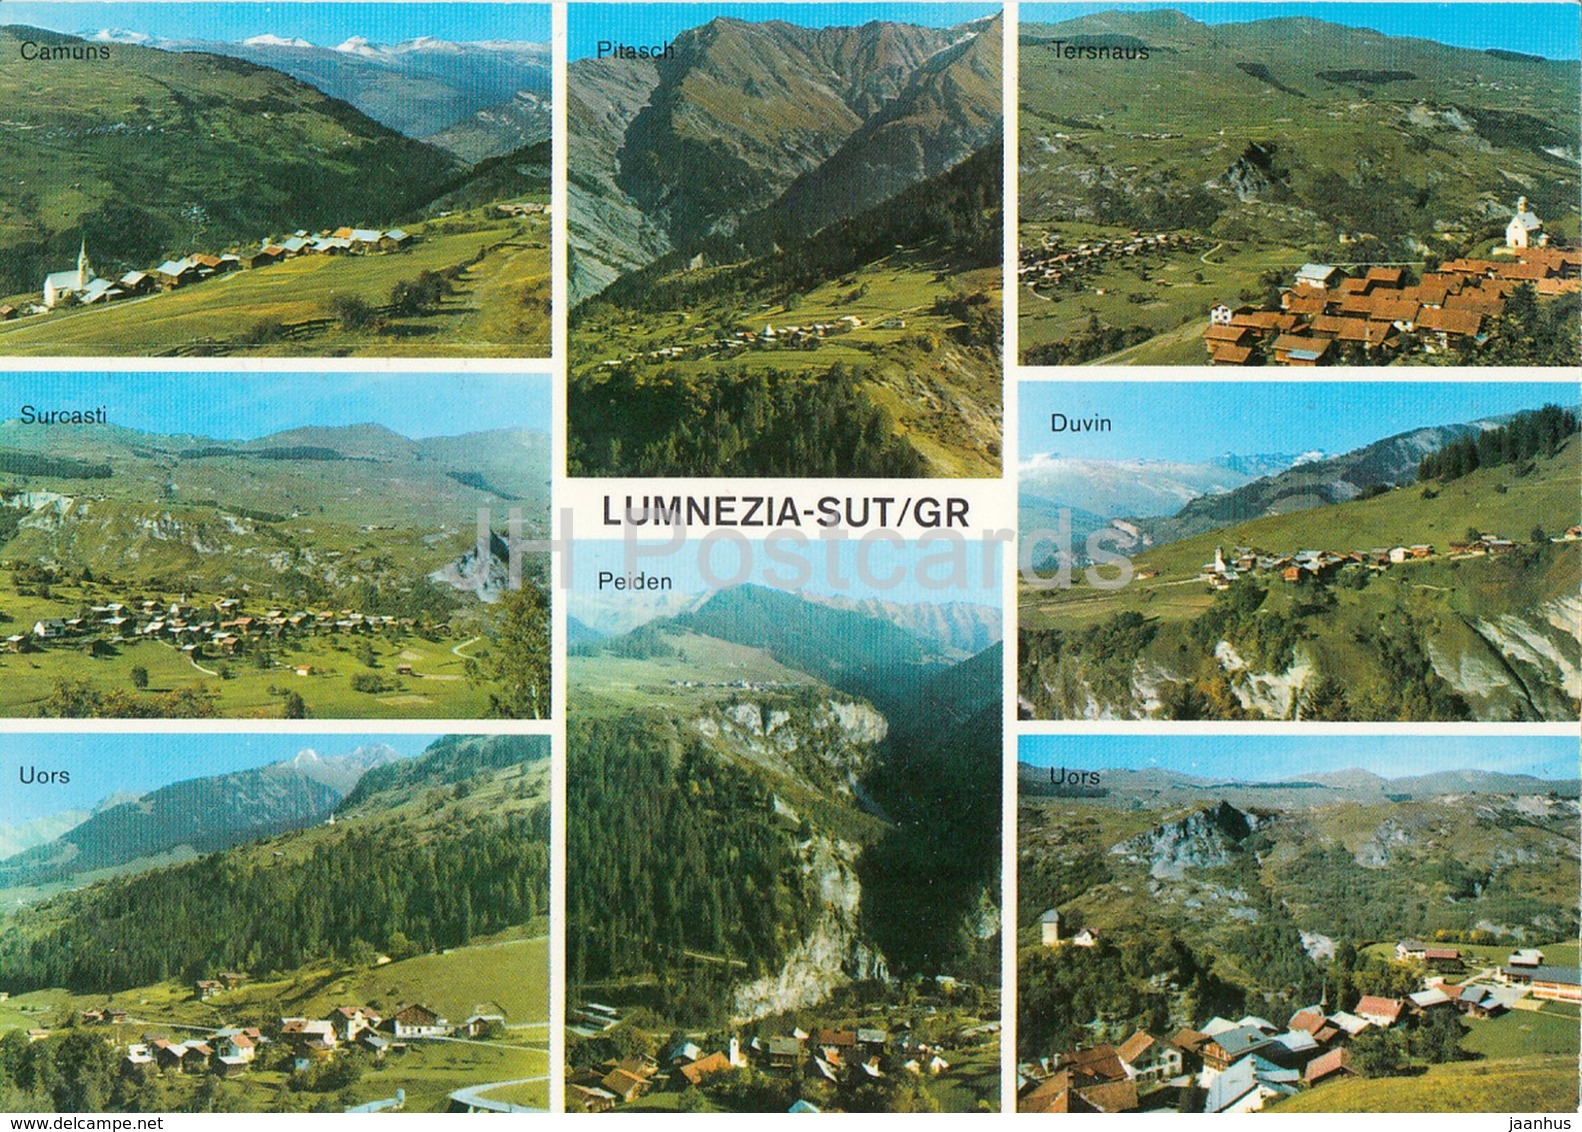 Lumnezia Sut - Camuns - Surcasti - Uors - Pitasch - Peiden - Tersnaus - Duvin - Uors - Multiview - Switzerland - Unused - Casti-Wergenstein